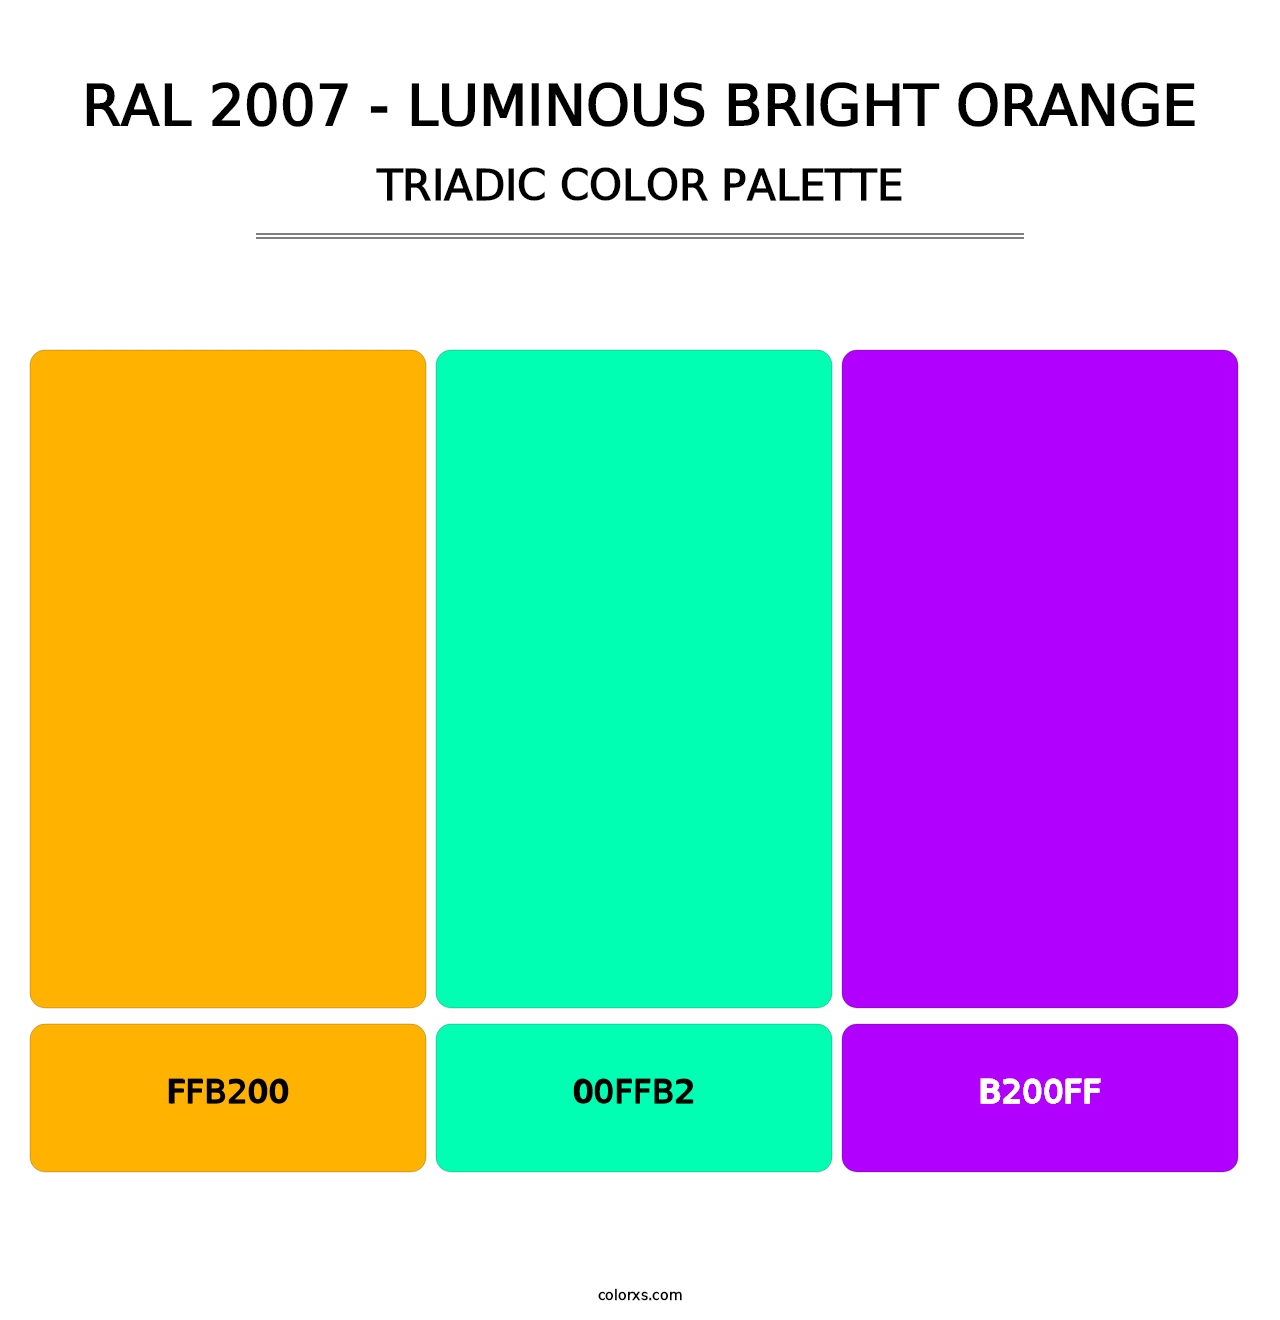 RAL 2007 - Luminous Bright Orange - Triadic Color Palette